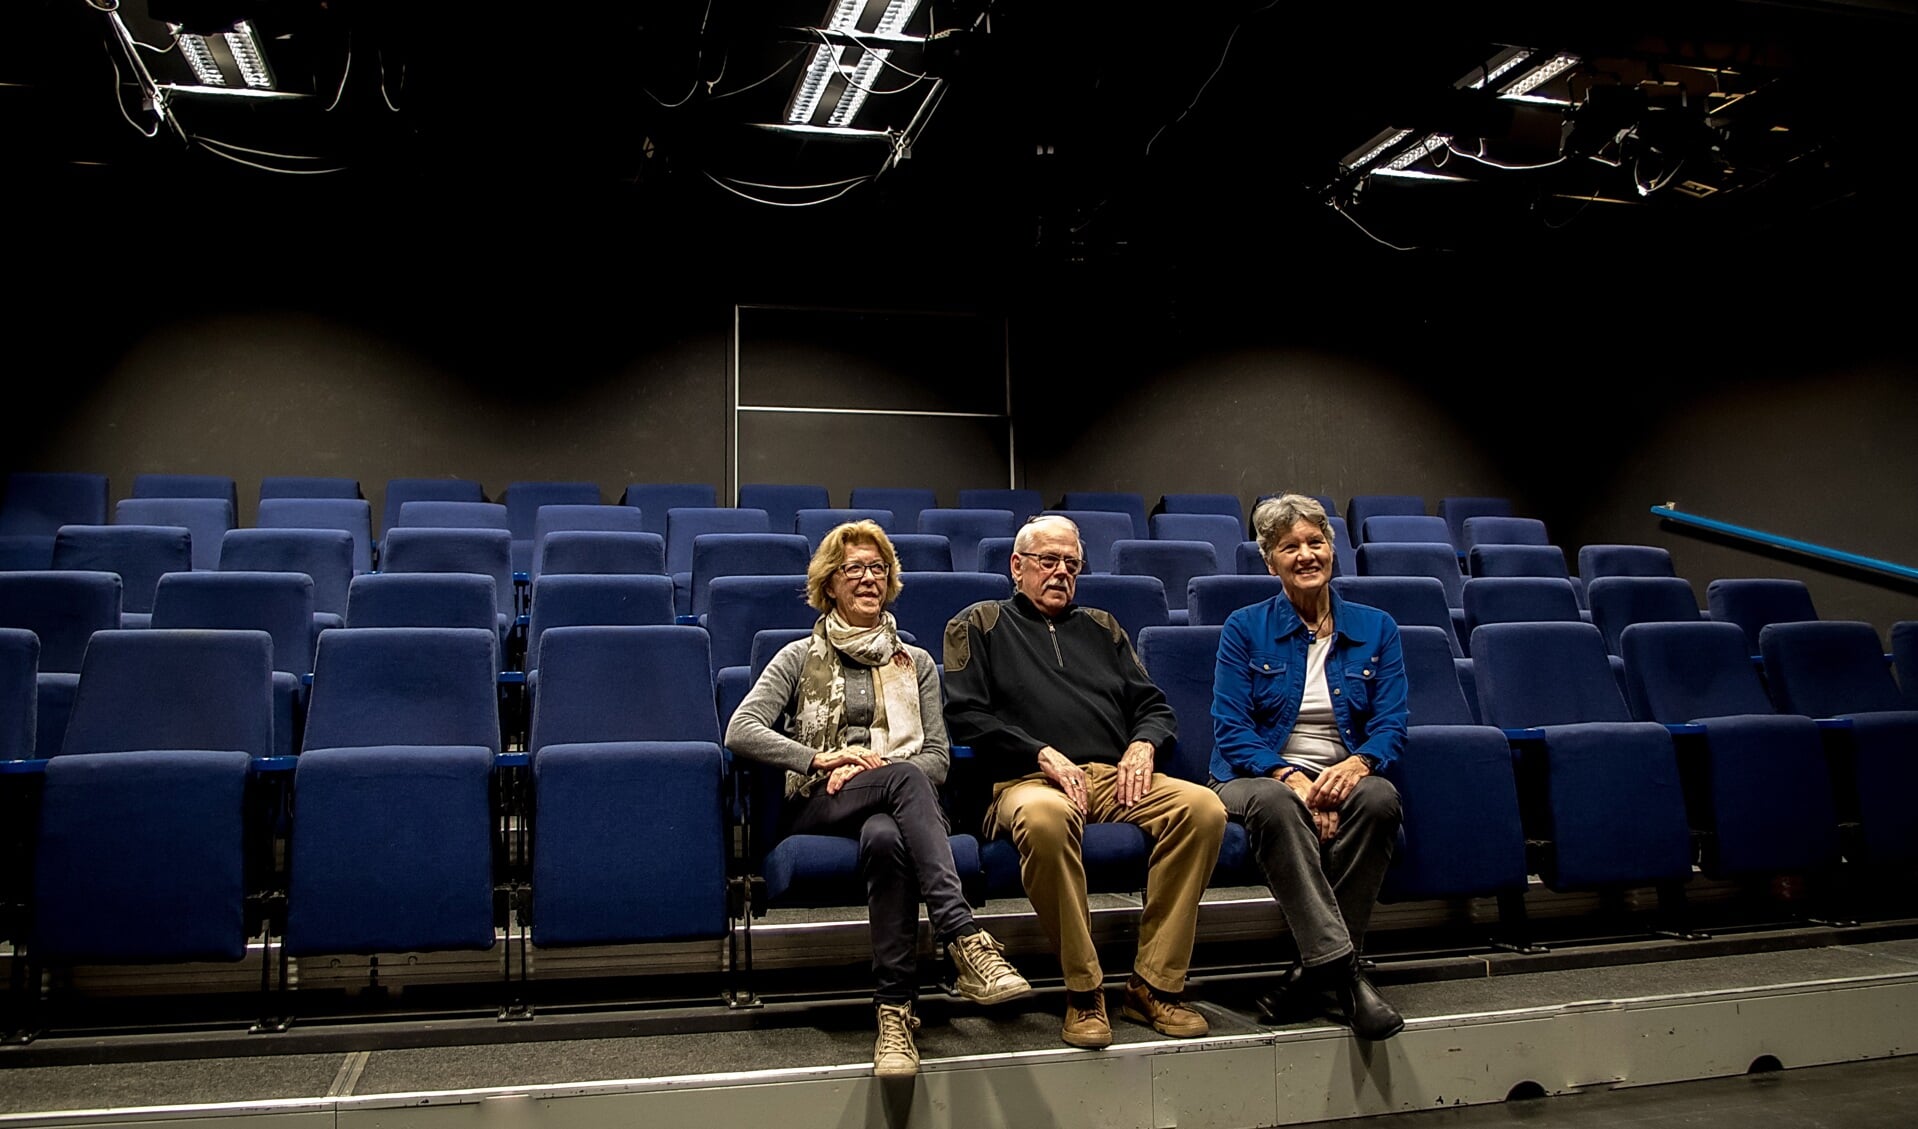 V.l.n.r. bestuursleden Marjan Seelen, Henk Koster en Ellen Gerrese van de Stichting Filmhuis Leiderdorp in de theaterzaal van Toverlei, die nu ook filmzaal is. 